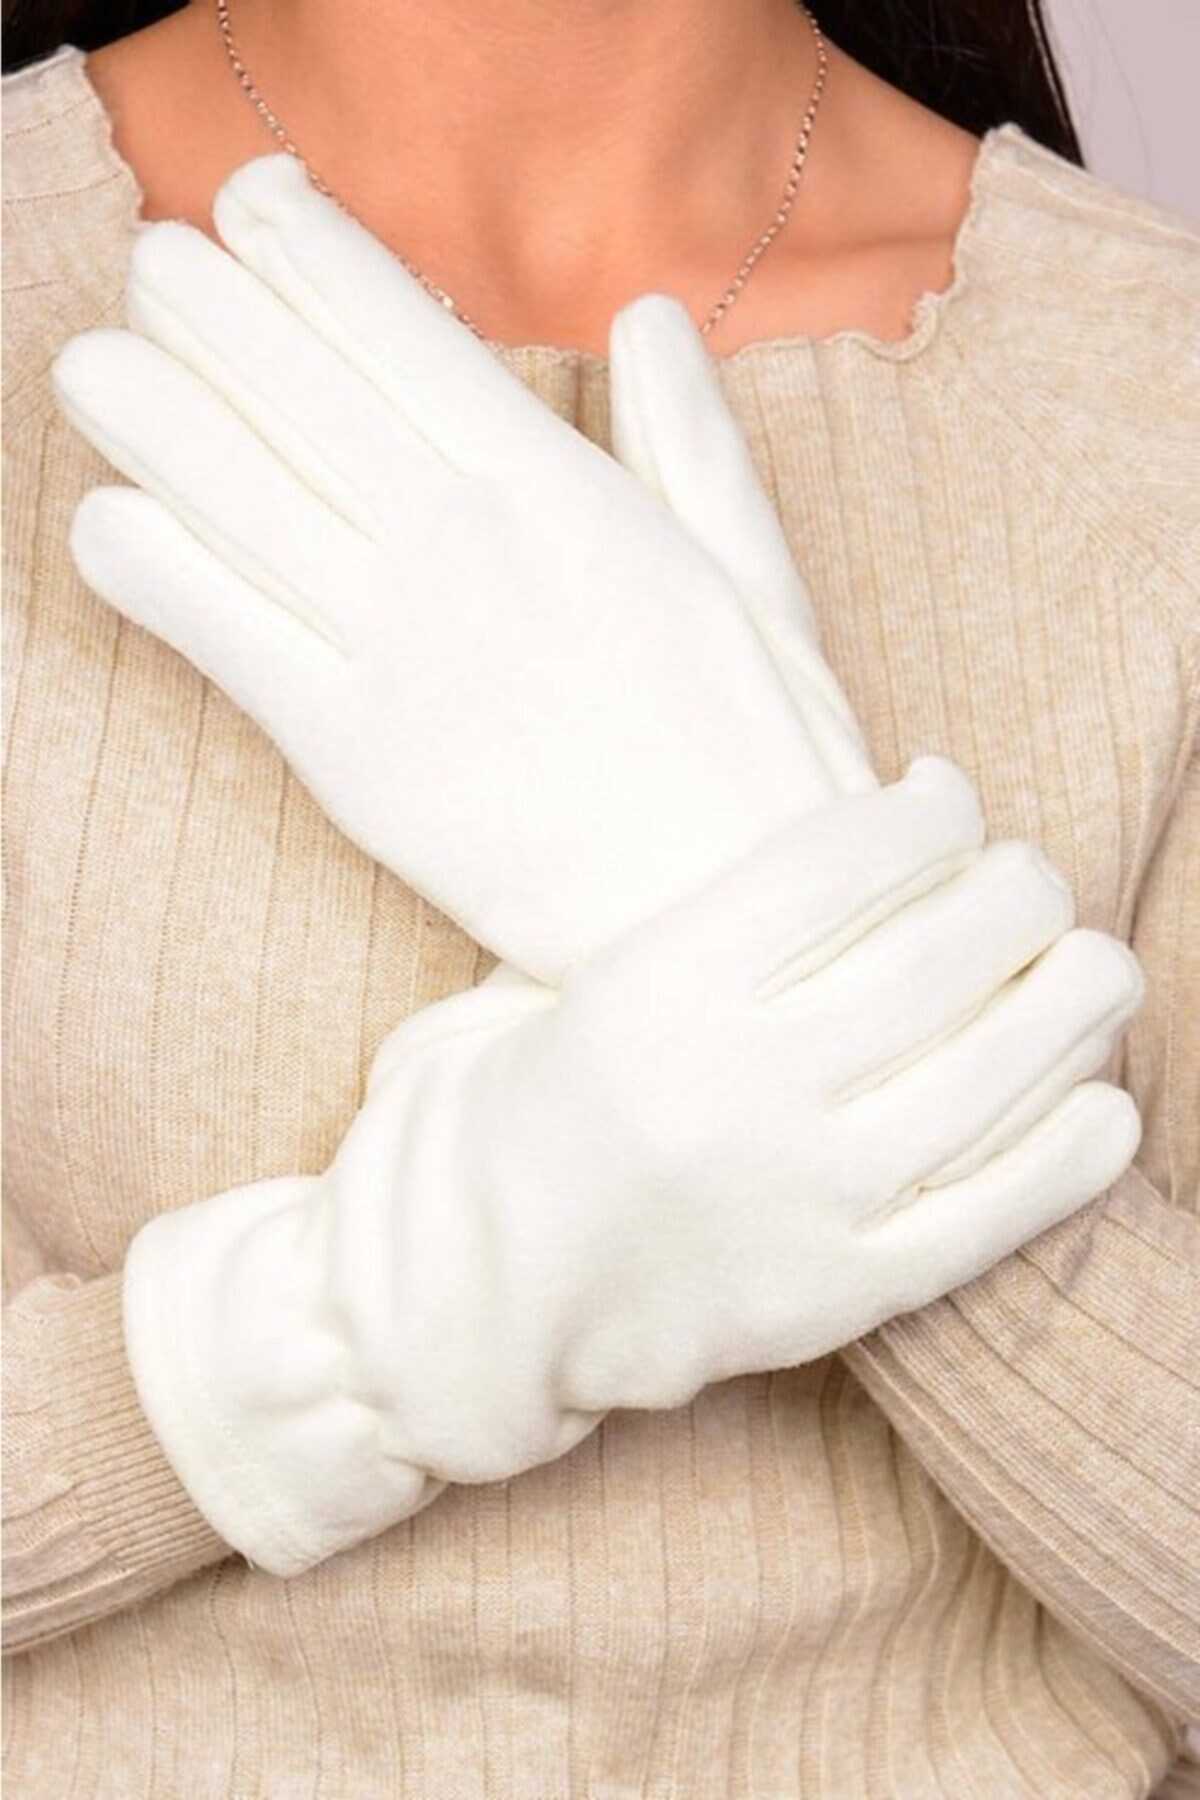 دستکش پشمی زنانه سفید برند SENZ COLLECTİON